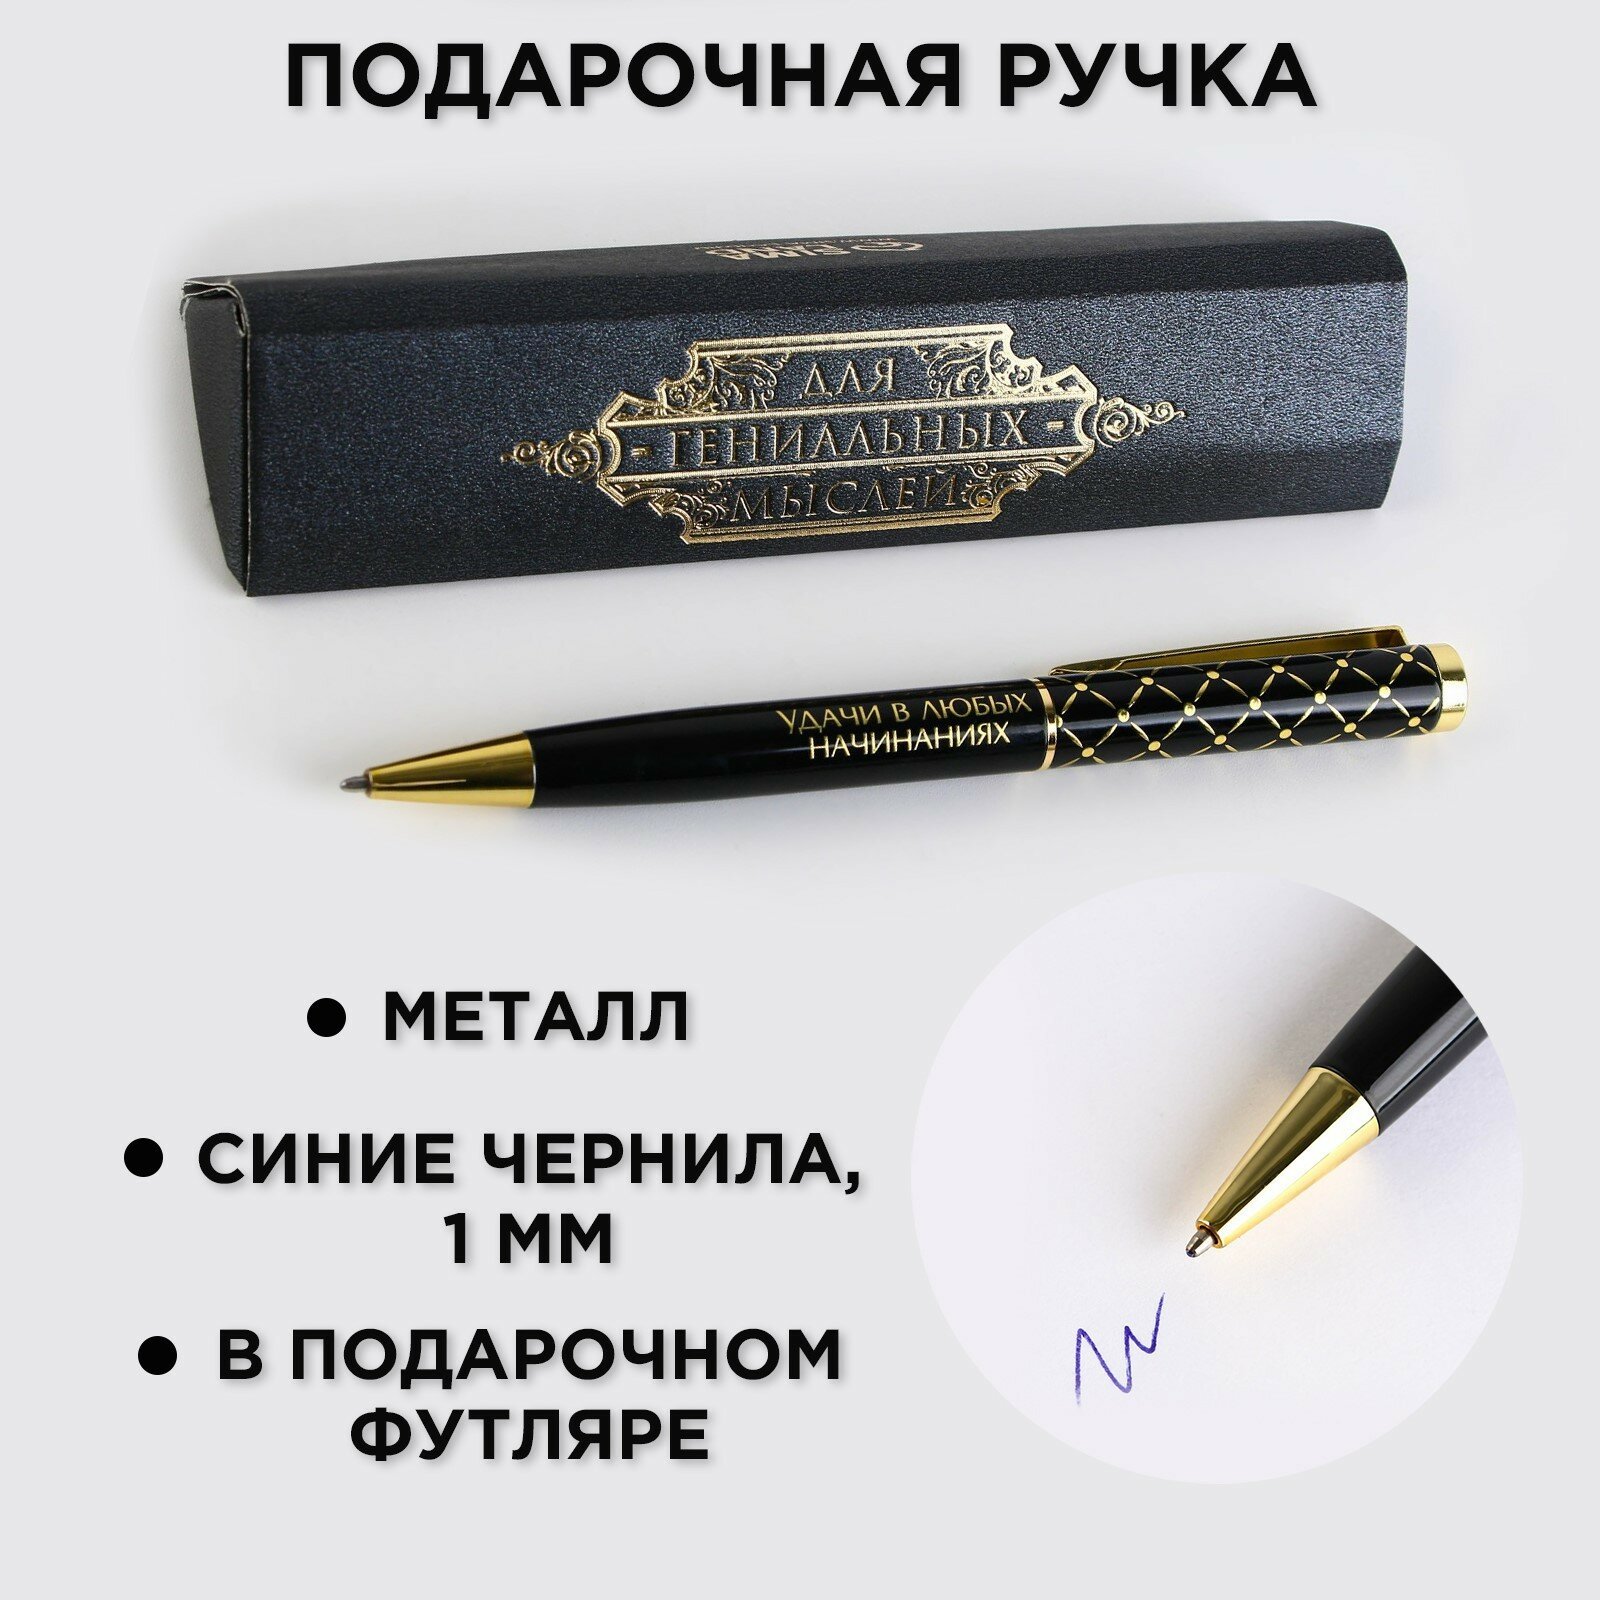 Ручка в подарочном футляре «Для гениальных мыслей», металл, синяя паста (1шт.)